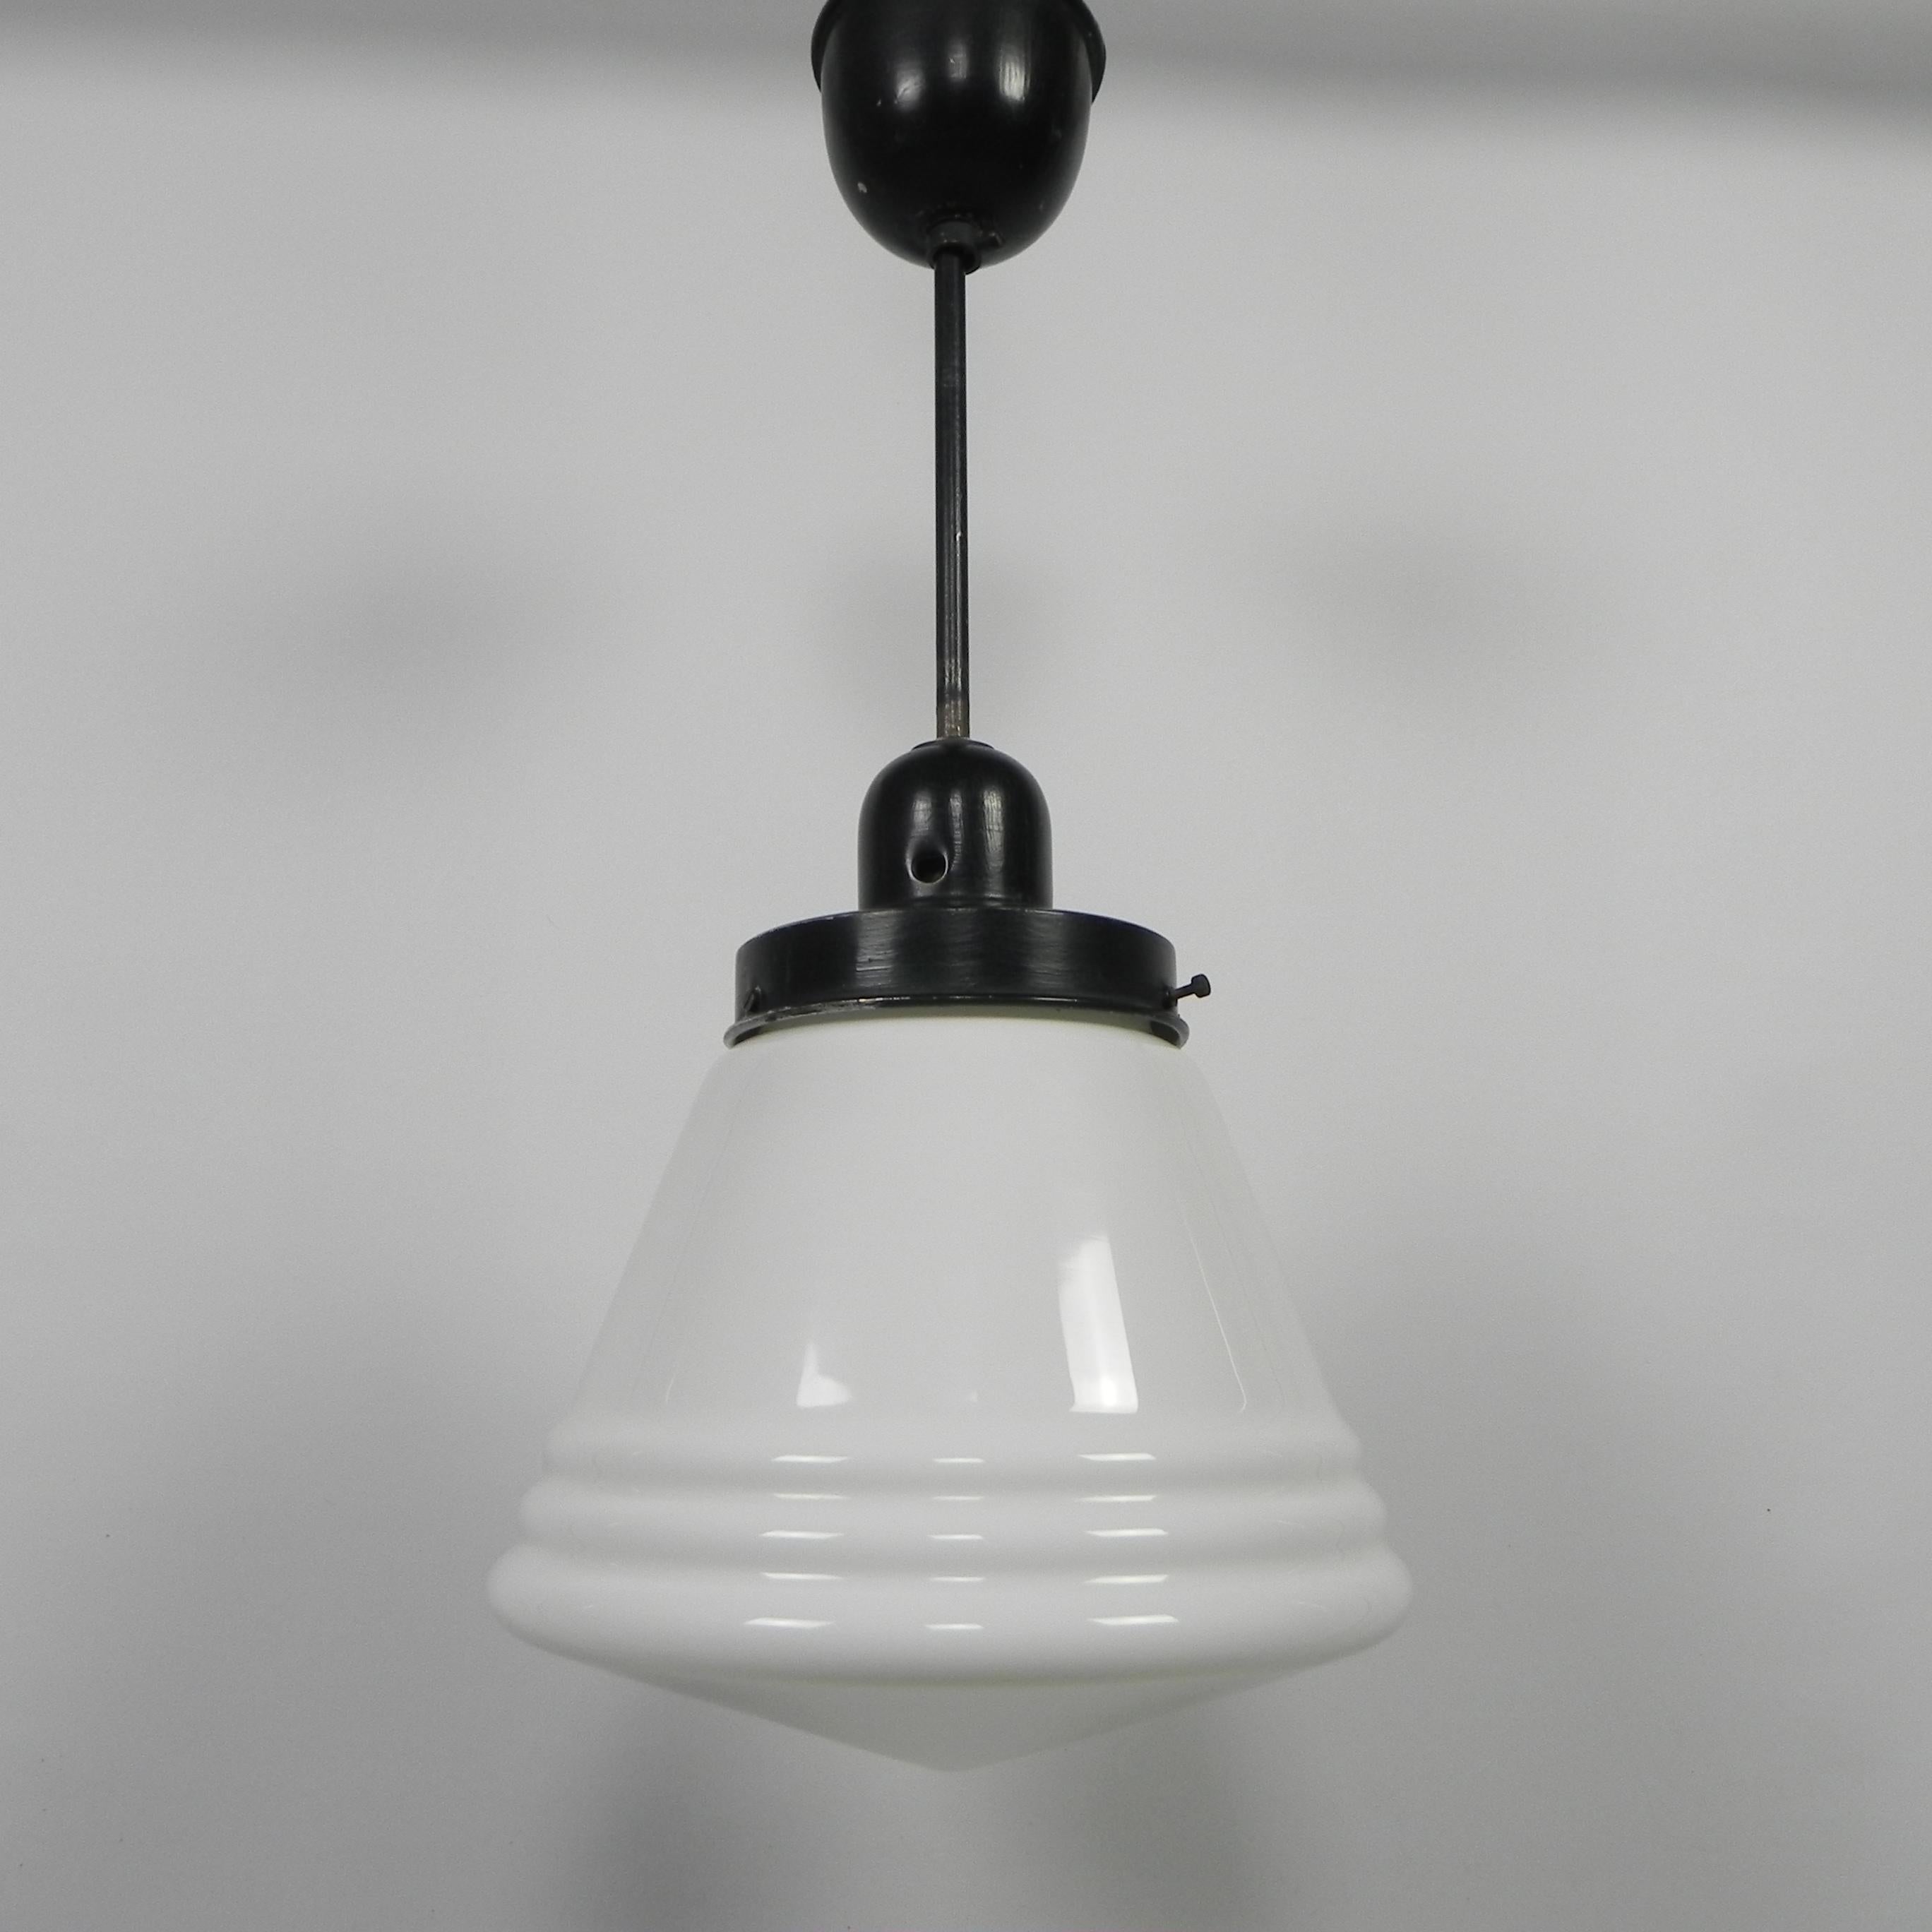 Höhe: 50 cm.
Ø: 22 cm.
Höhe des Schirms: 18 cm.
Die Lampe hat eine große Glühbirnenfassung (E27)
und neues Thema.
Herkunft: Niederlande, 1930er Jahre.
MATERIAL: Glas, Aluminium, Stahl.
Alle unsere Lampen sind für LED-Lampen geeignet.